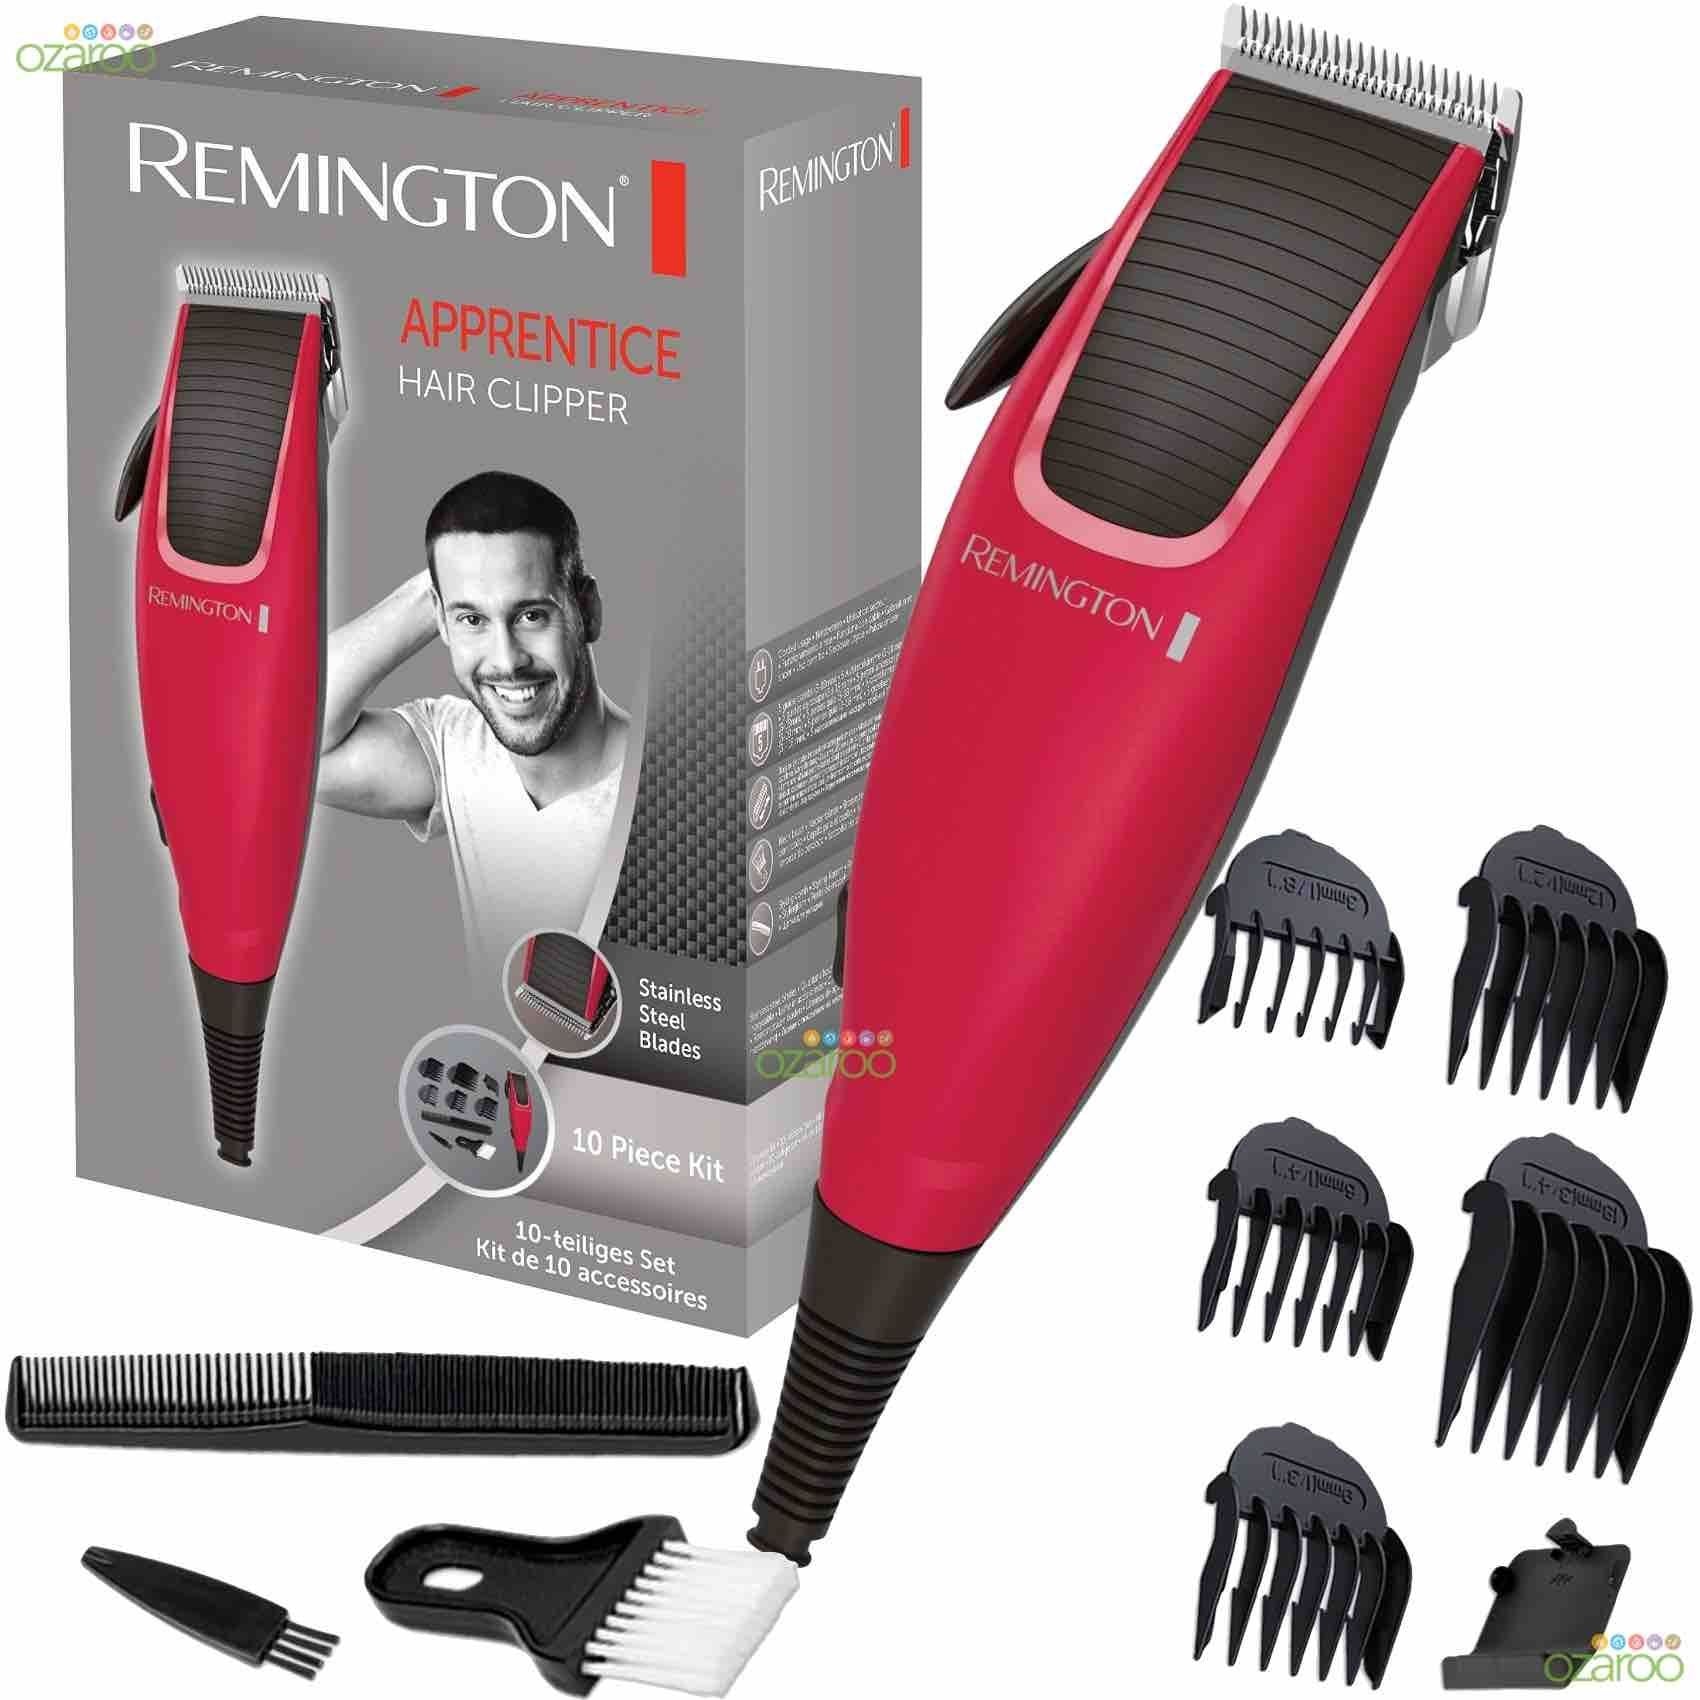 Remington Hair Clipper